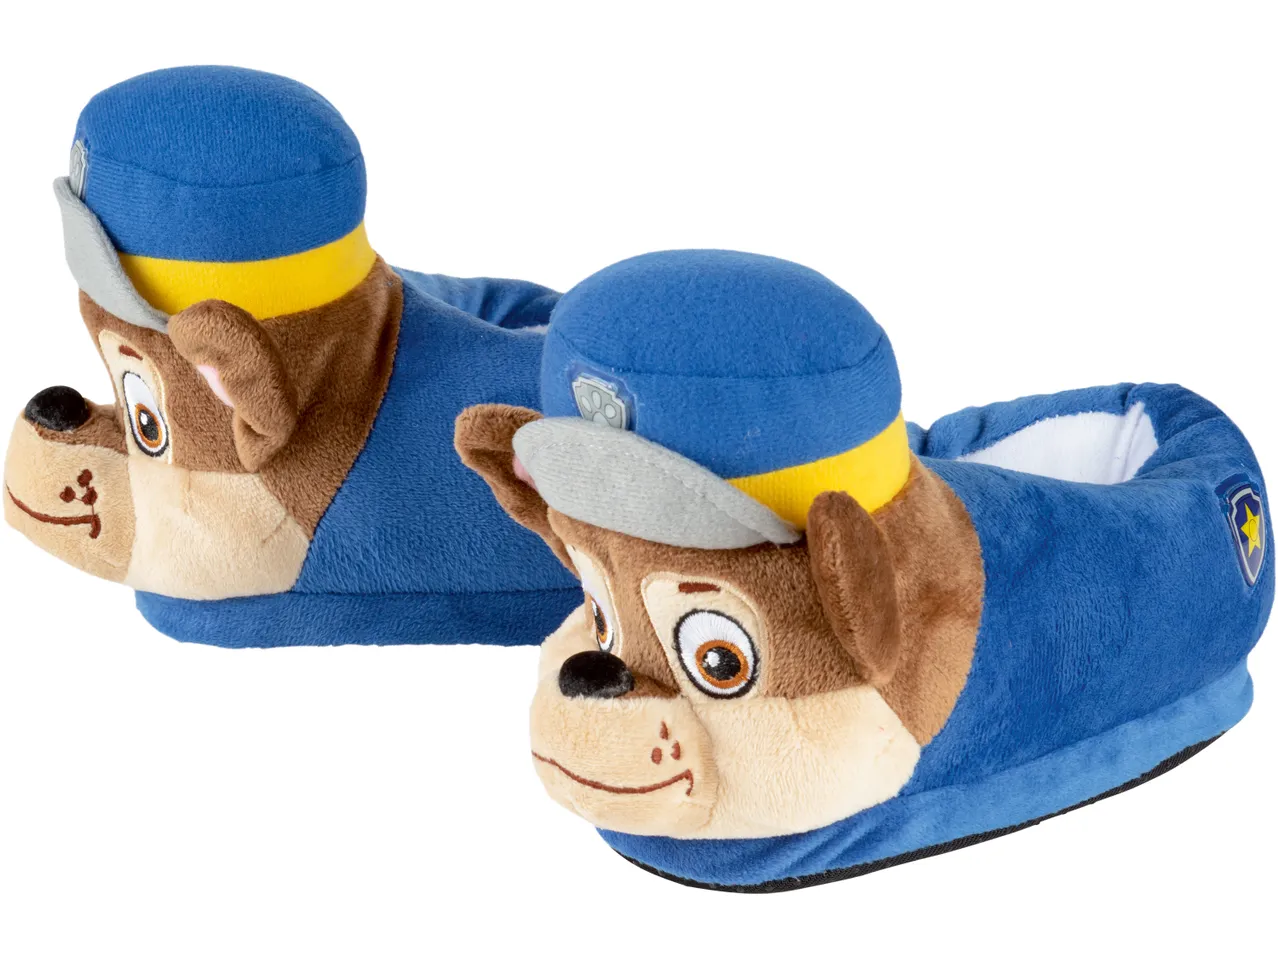 Pantofole per bambini Peppa Pig, Paw , prezzo 12.99 EUR